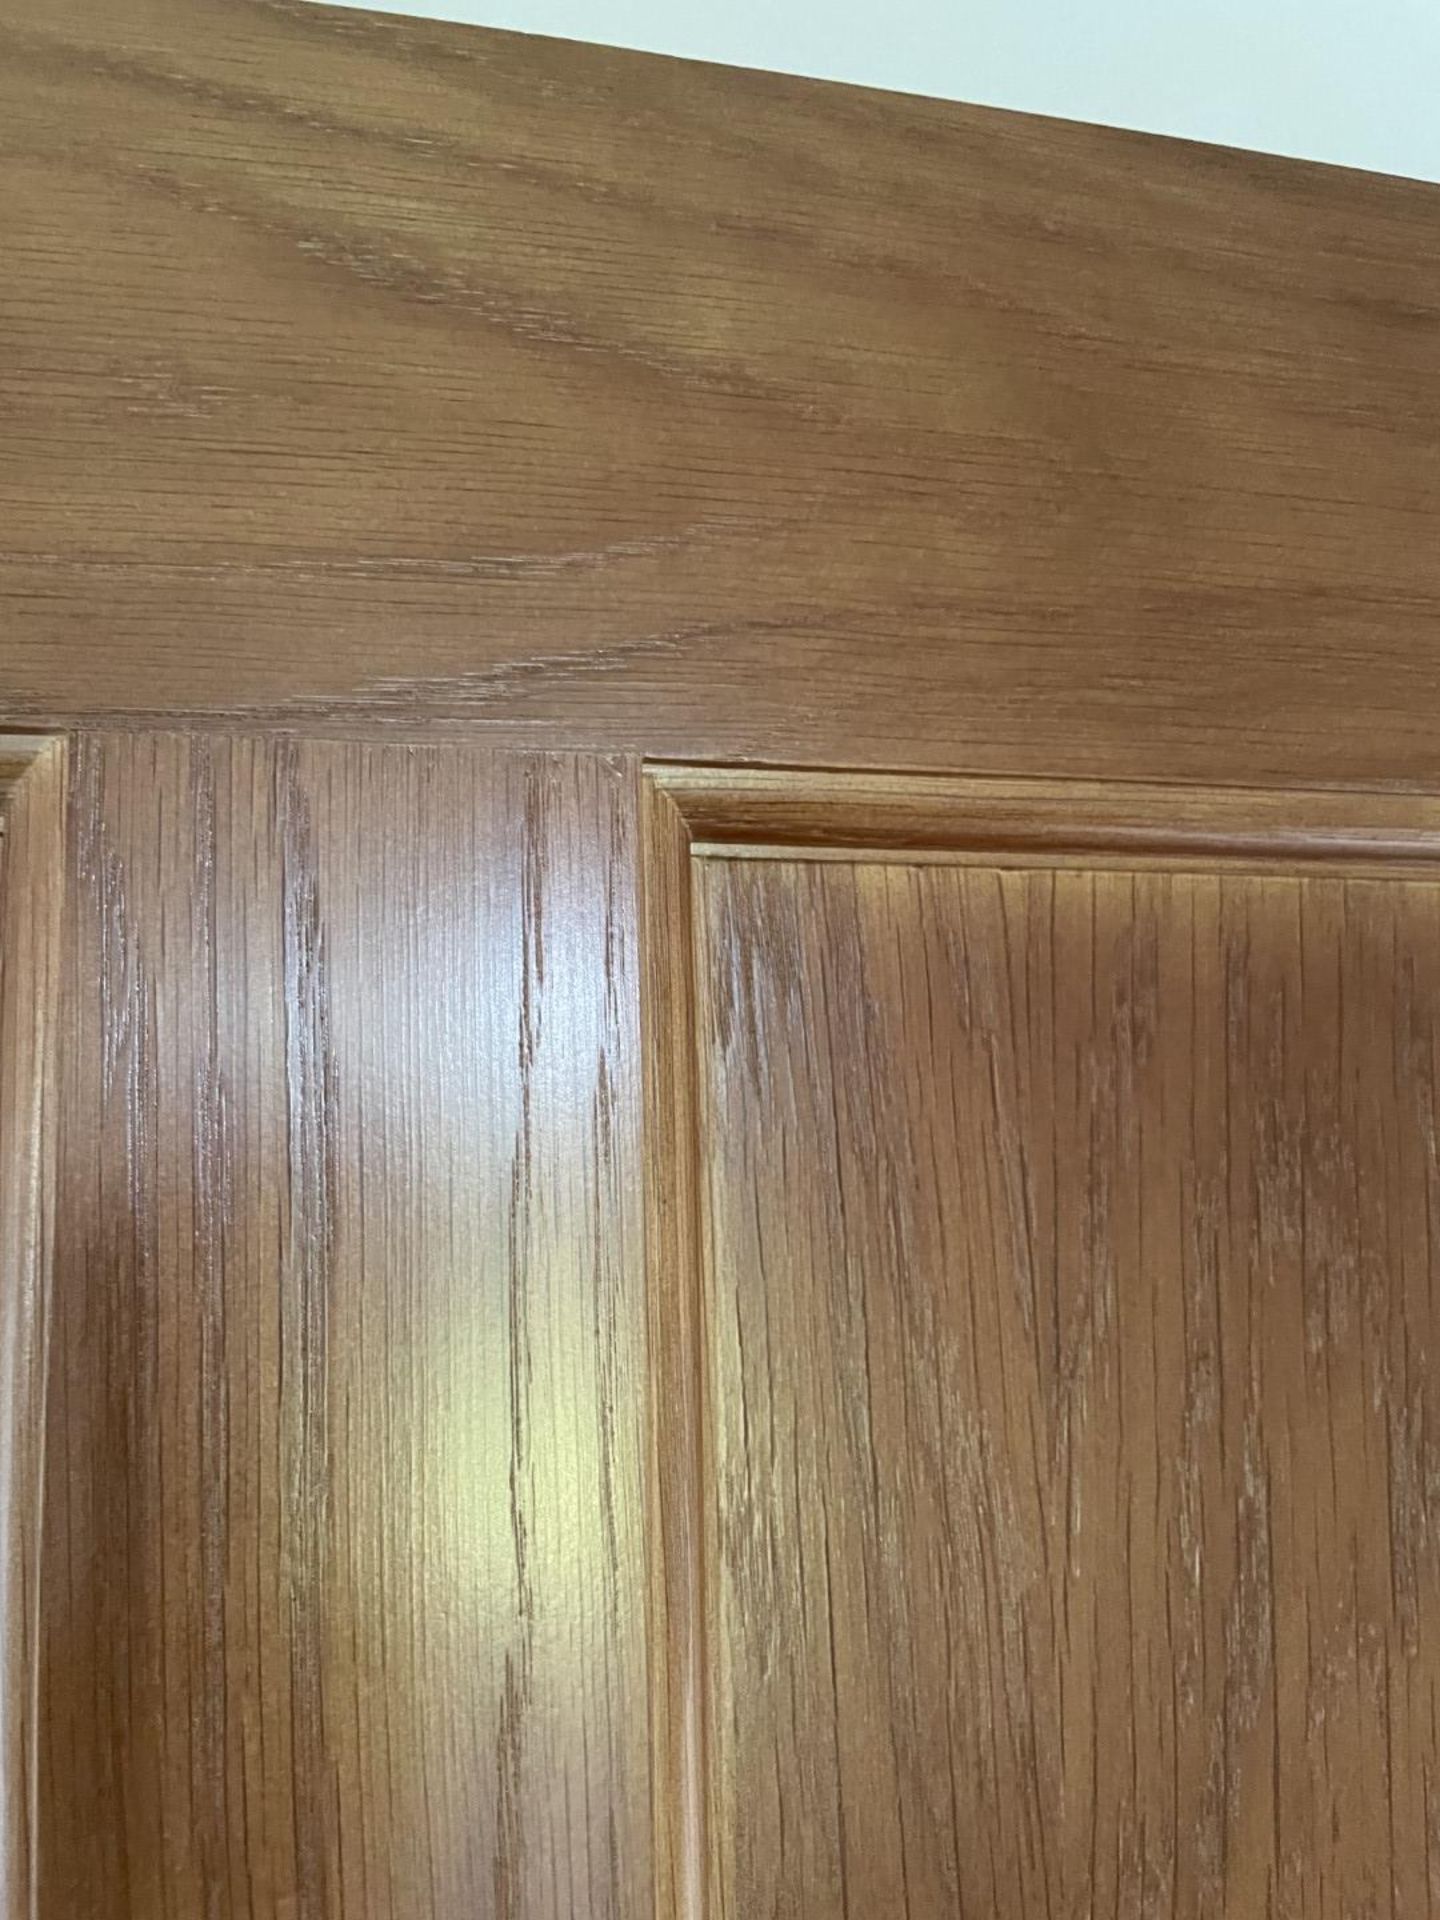 1 x Solid Oak Wooden Lockable Internal Door - Ref: PAN201 / INHLWY - CL896 - NO VAT - Image 2 of 10